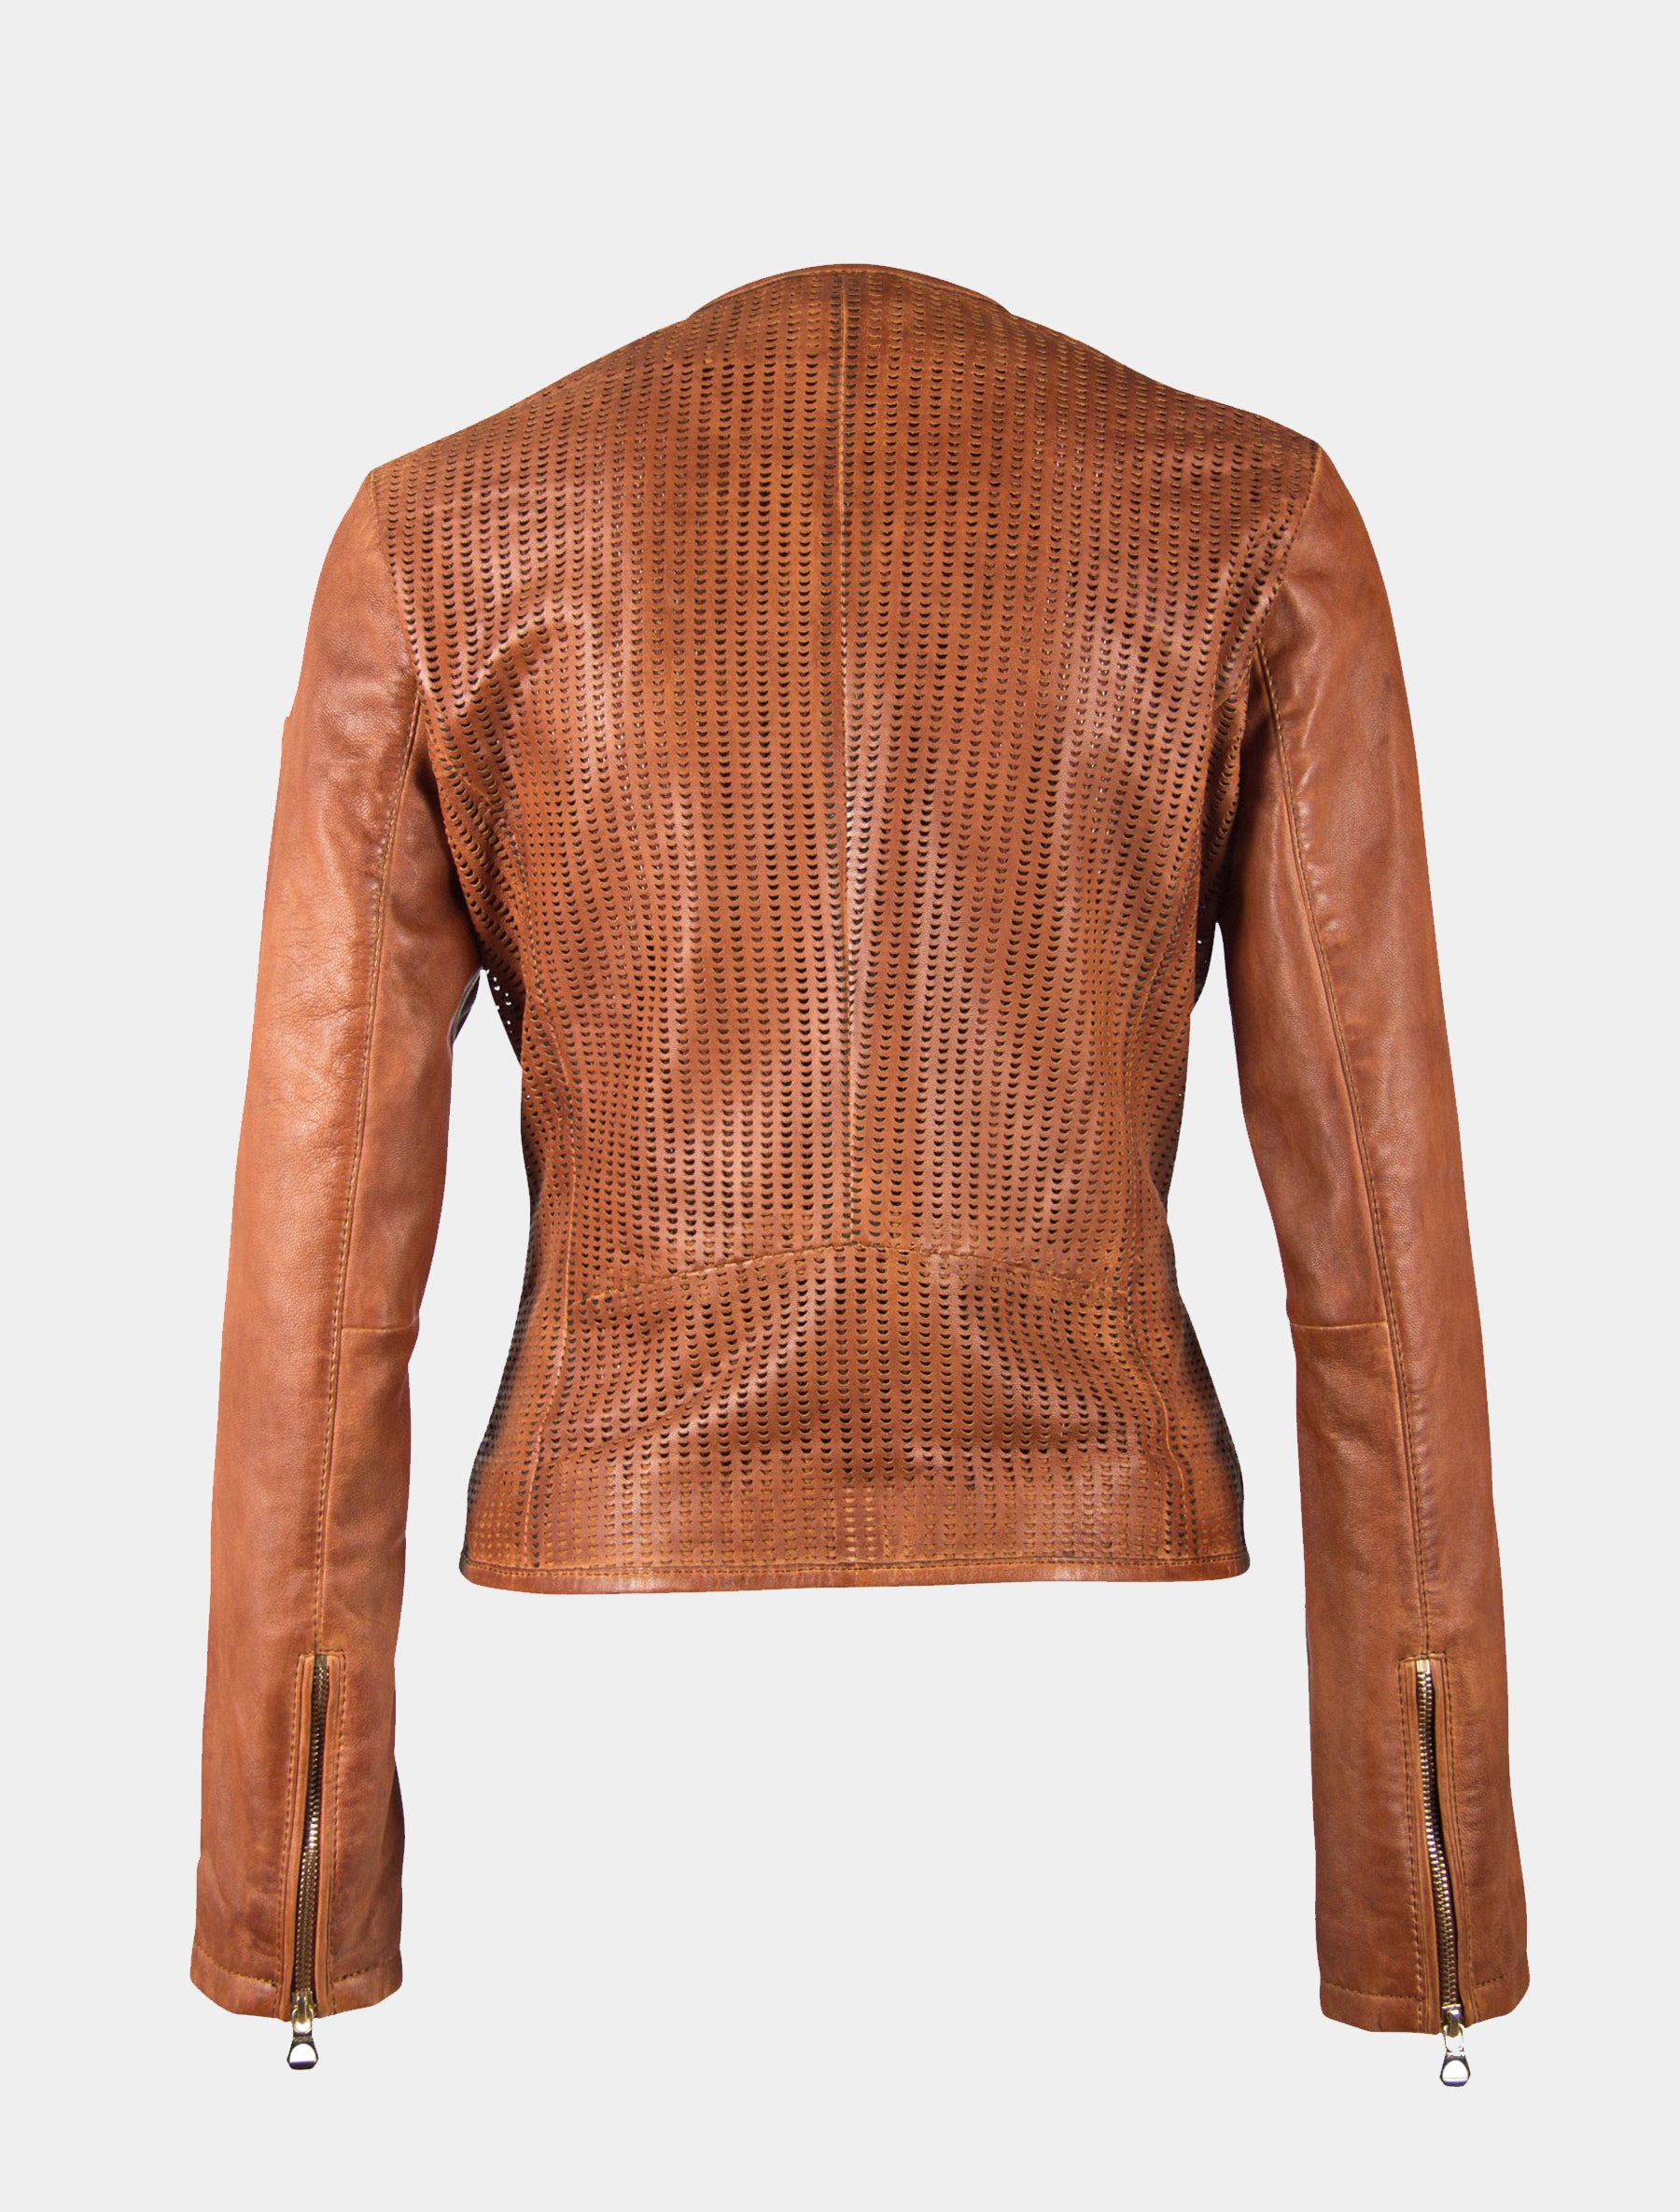 Damen kragenlose Kurzjacke aus perforiertem Leder - GGBlanka LNV in cognac